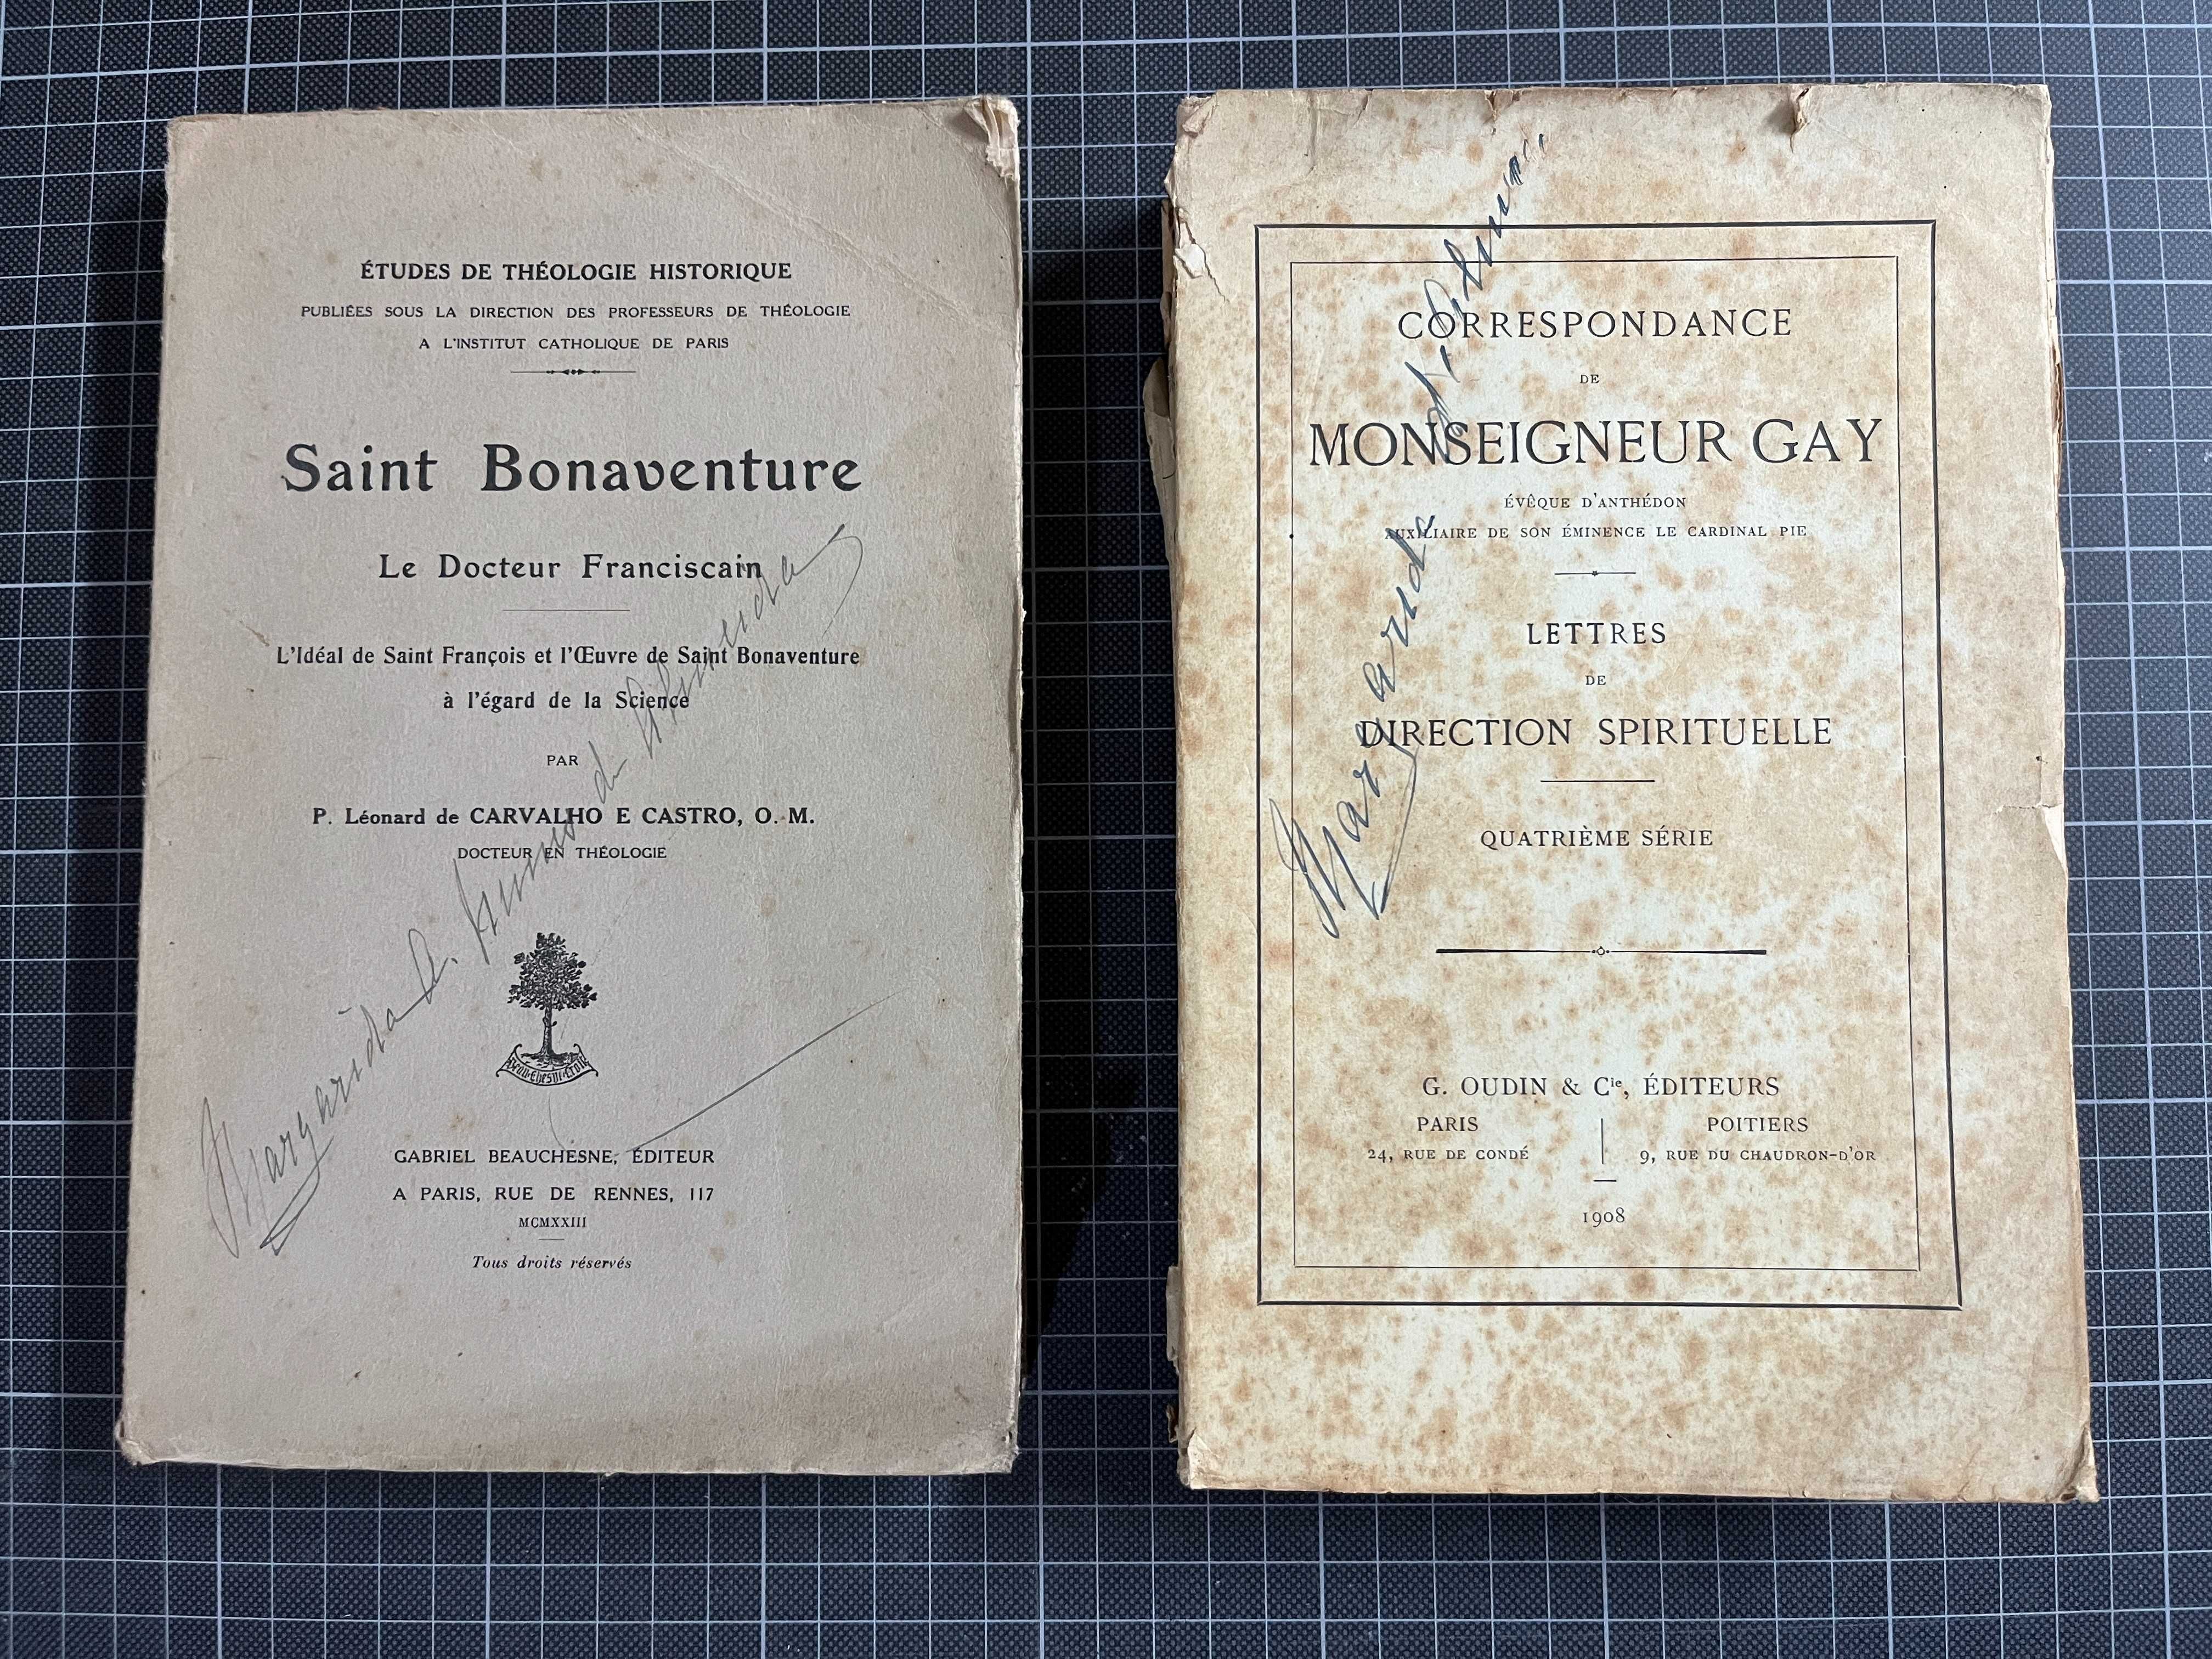 Saint Bonaventure + Correspondance de Monseigneur Gay